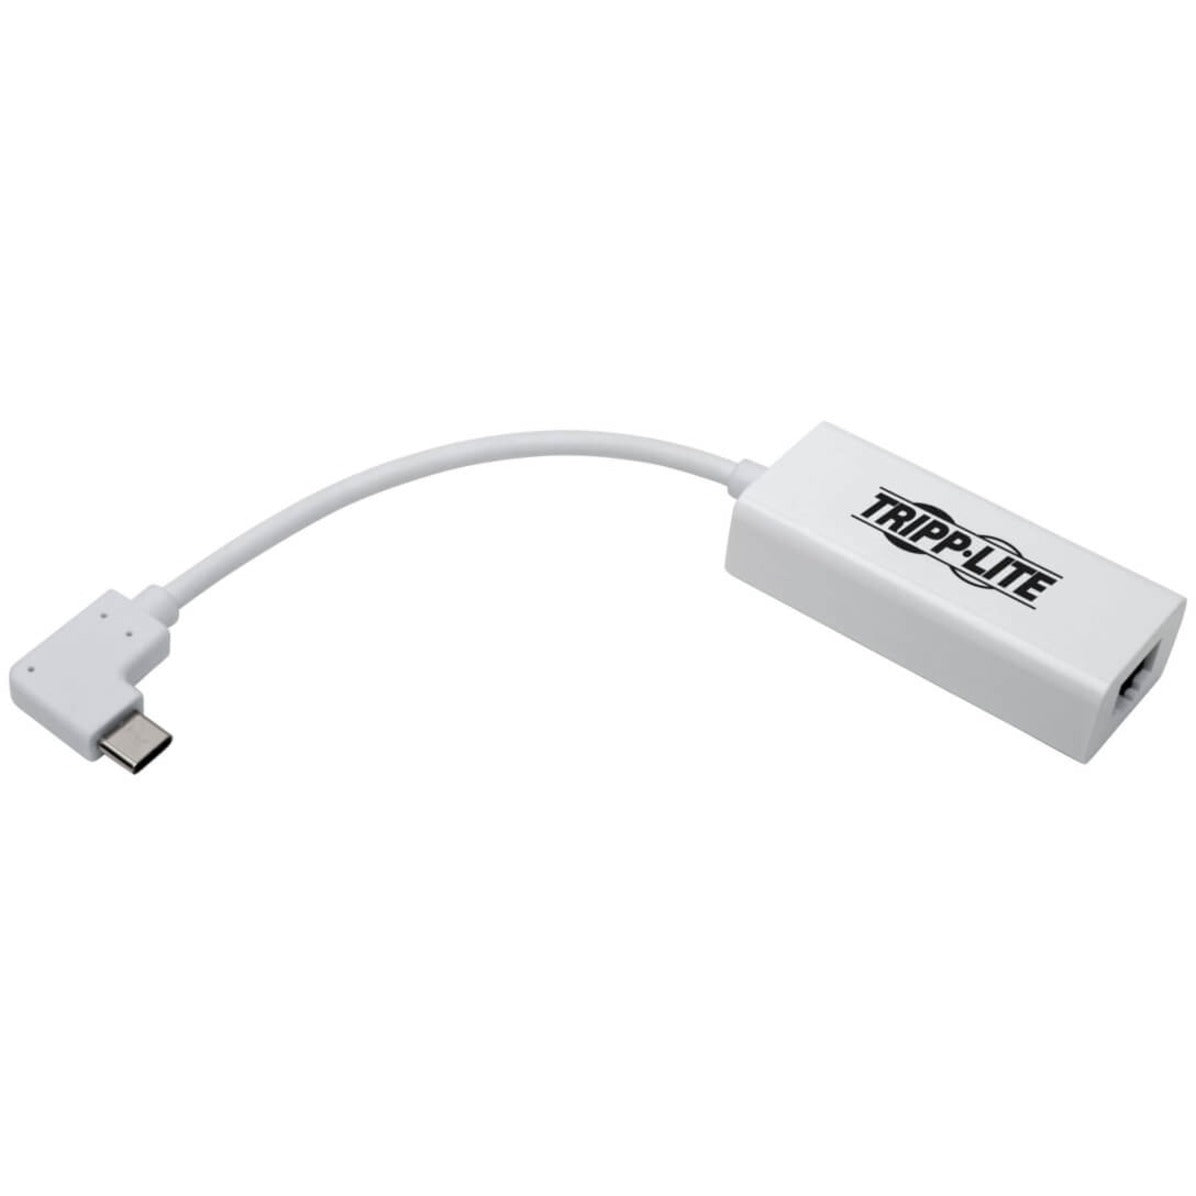 Tripp Lite U436-06N-GBW-RA Tarjeta de Ethernet Gigabit Adaptador USB-C de ángulo recto USB 3.1 GEN 1. Marca: Tripp Lite.